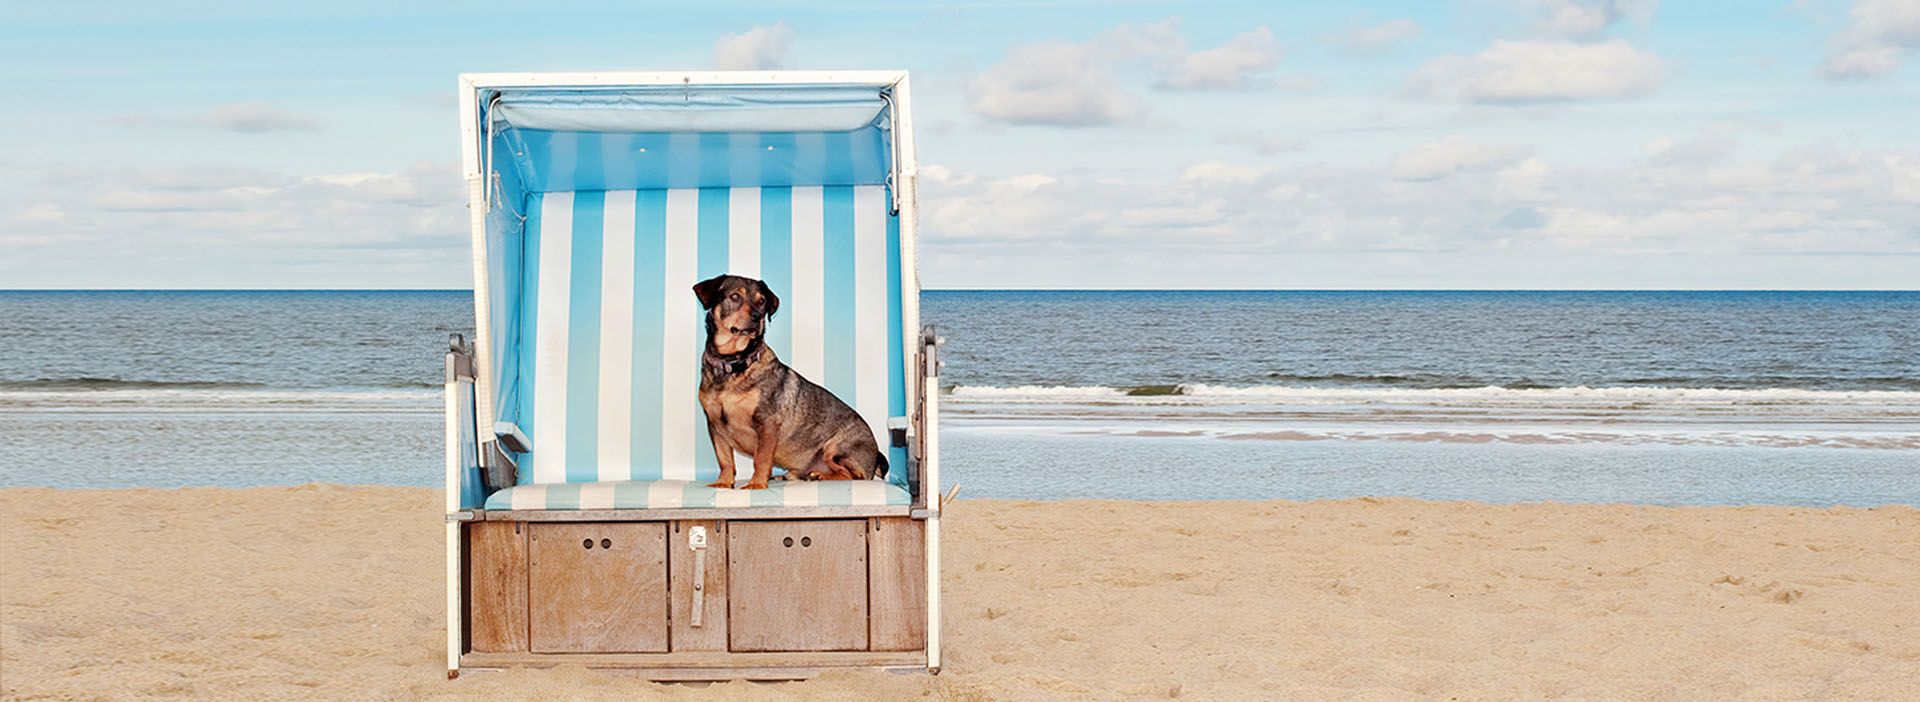 Hund im Strandkorb an der Ostsee